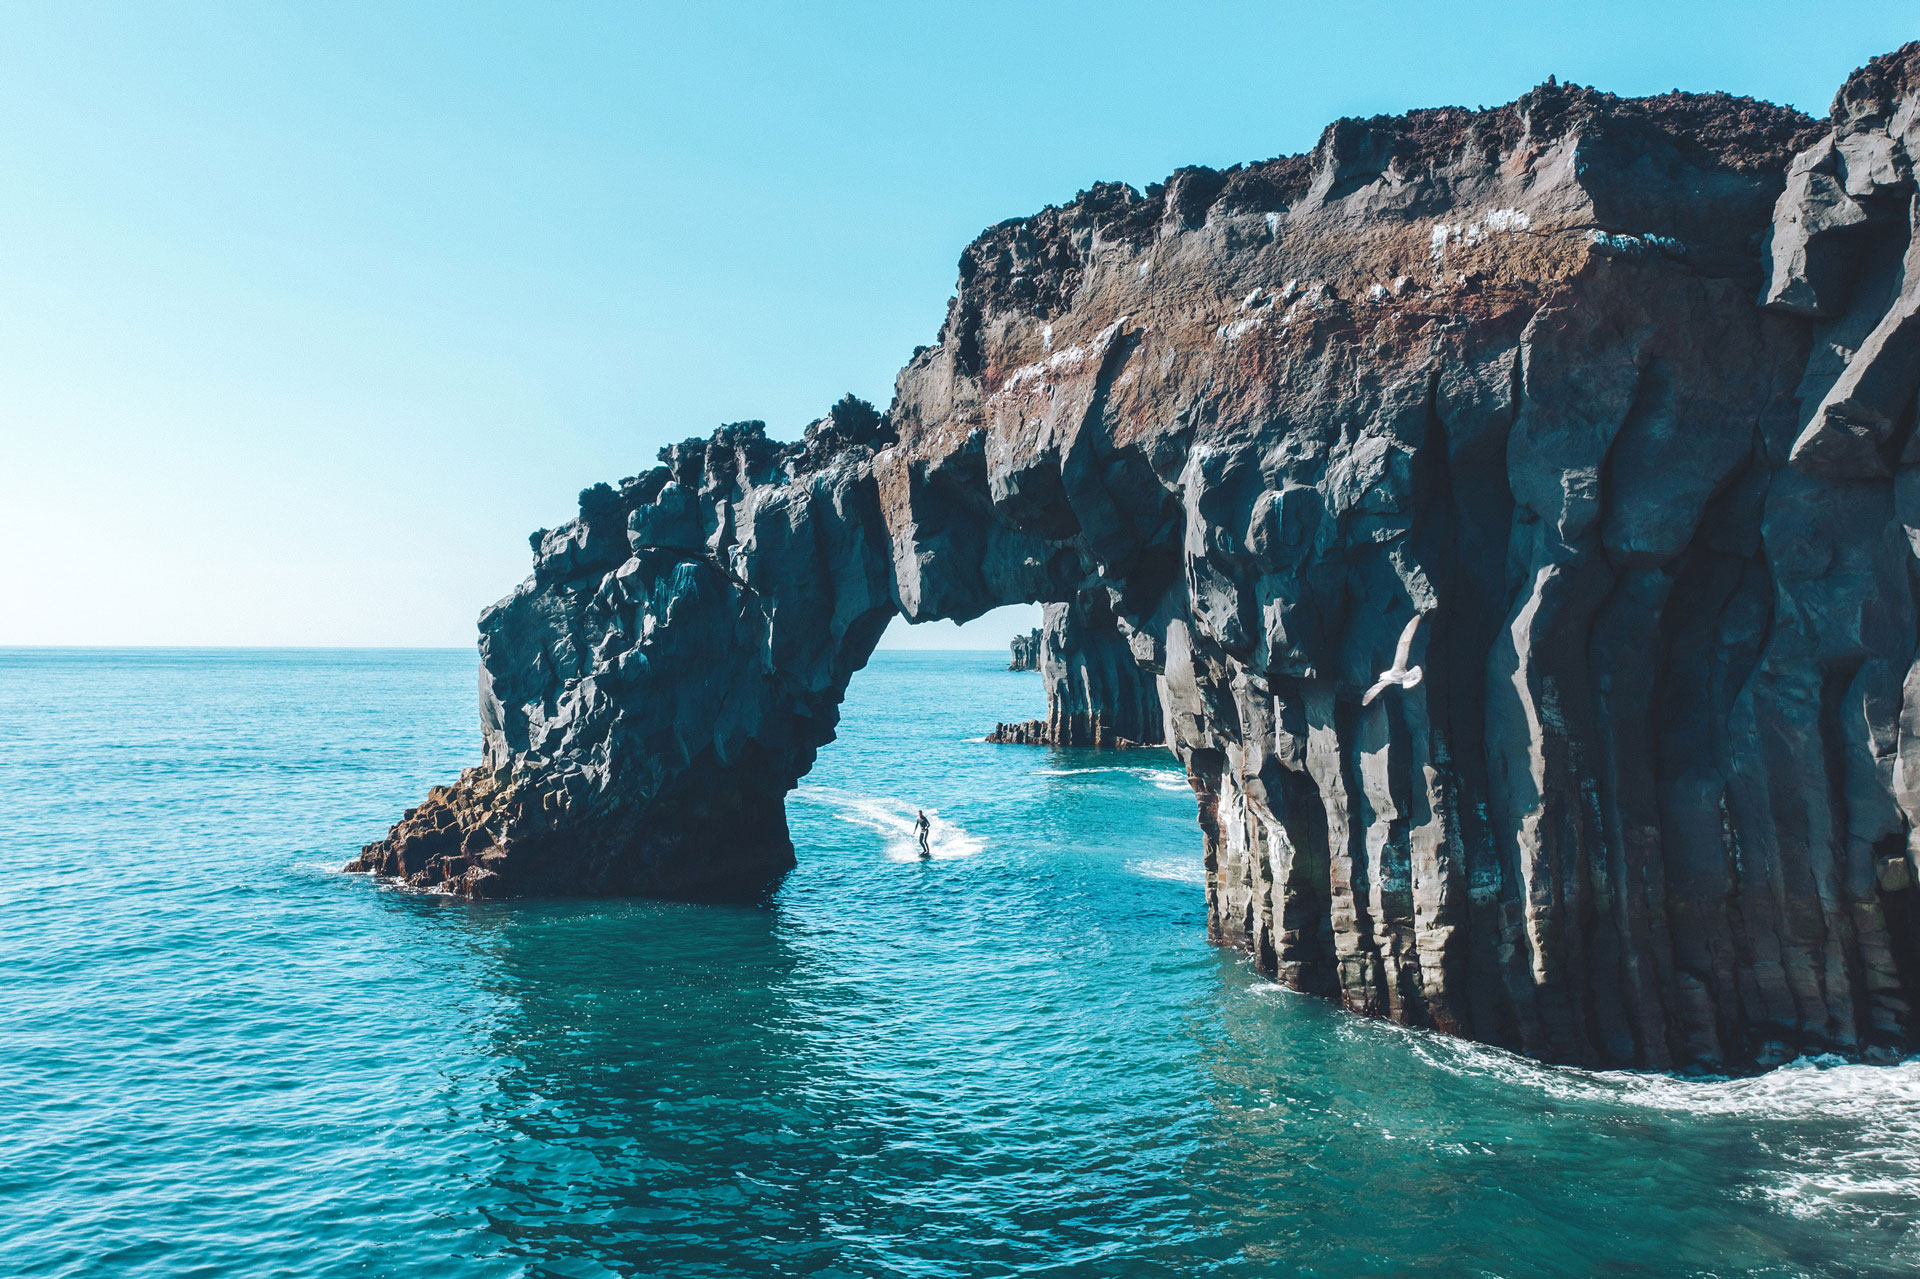 montagne avec falaise, un surfeur passe entre deux roches